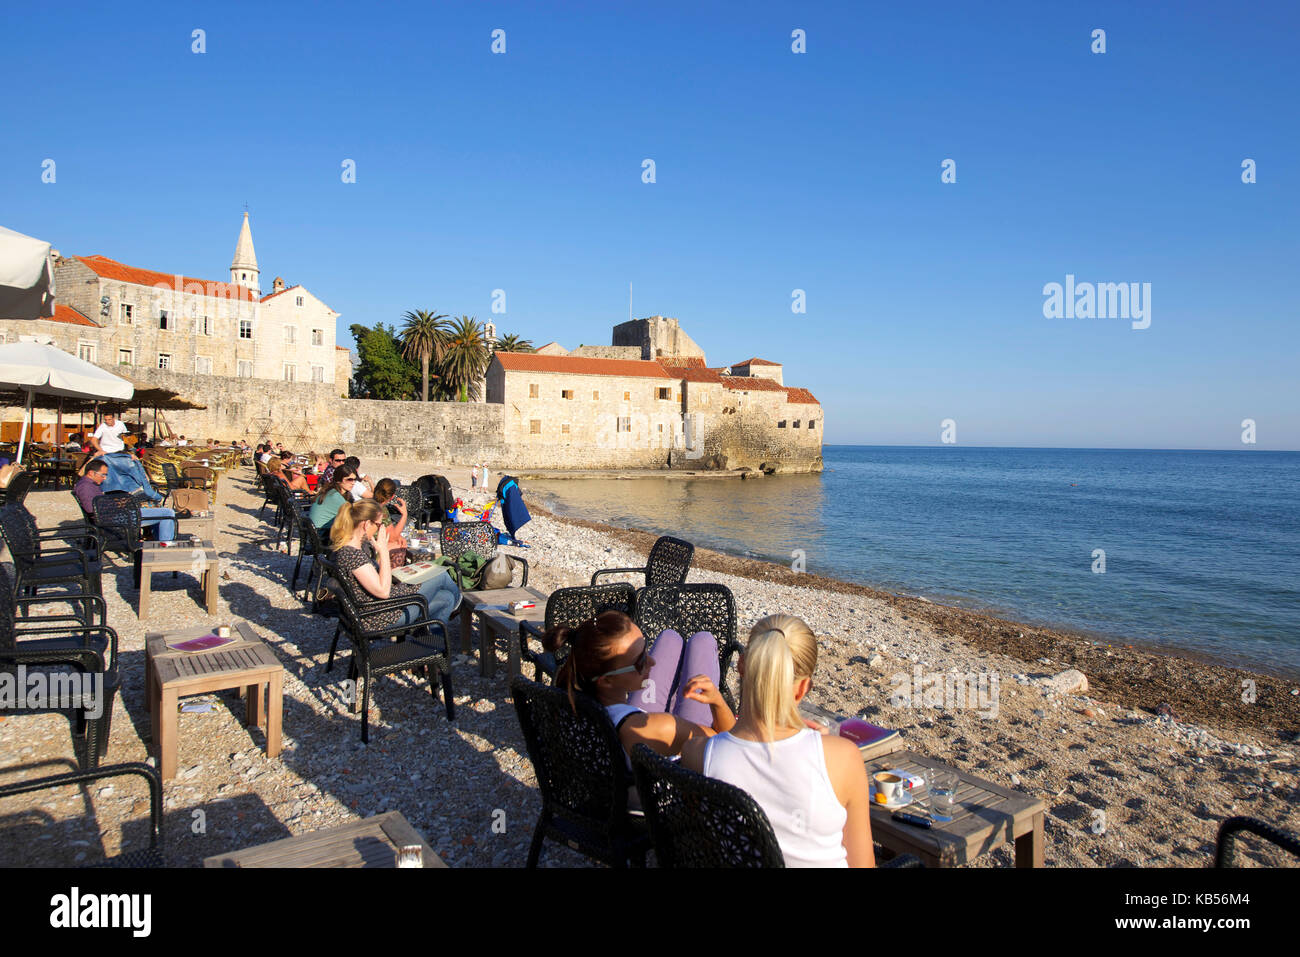 Le Monténégro, côte adriatique, vieille ville de Budva, terrasse de café sur la plage Banque D'Images